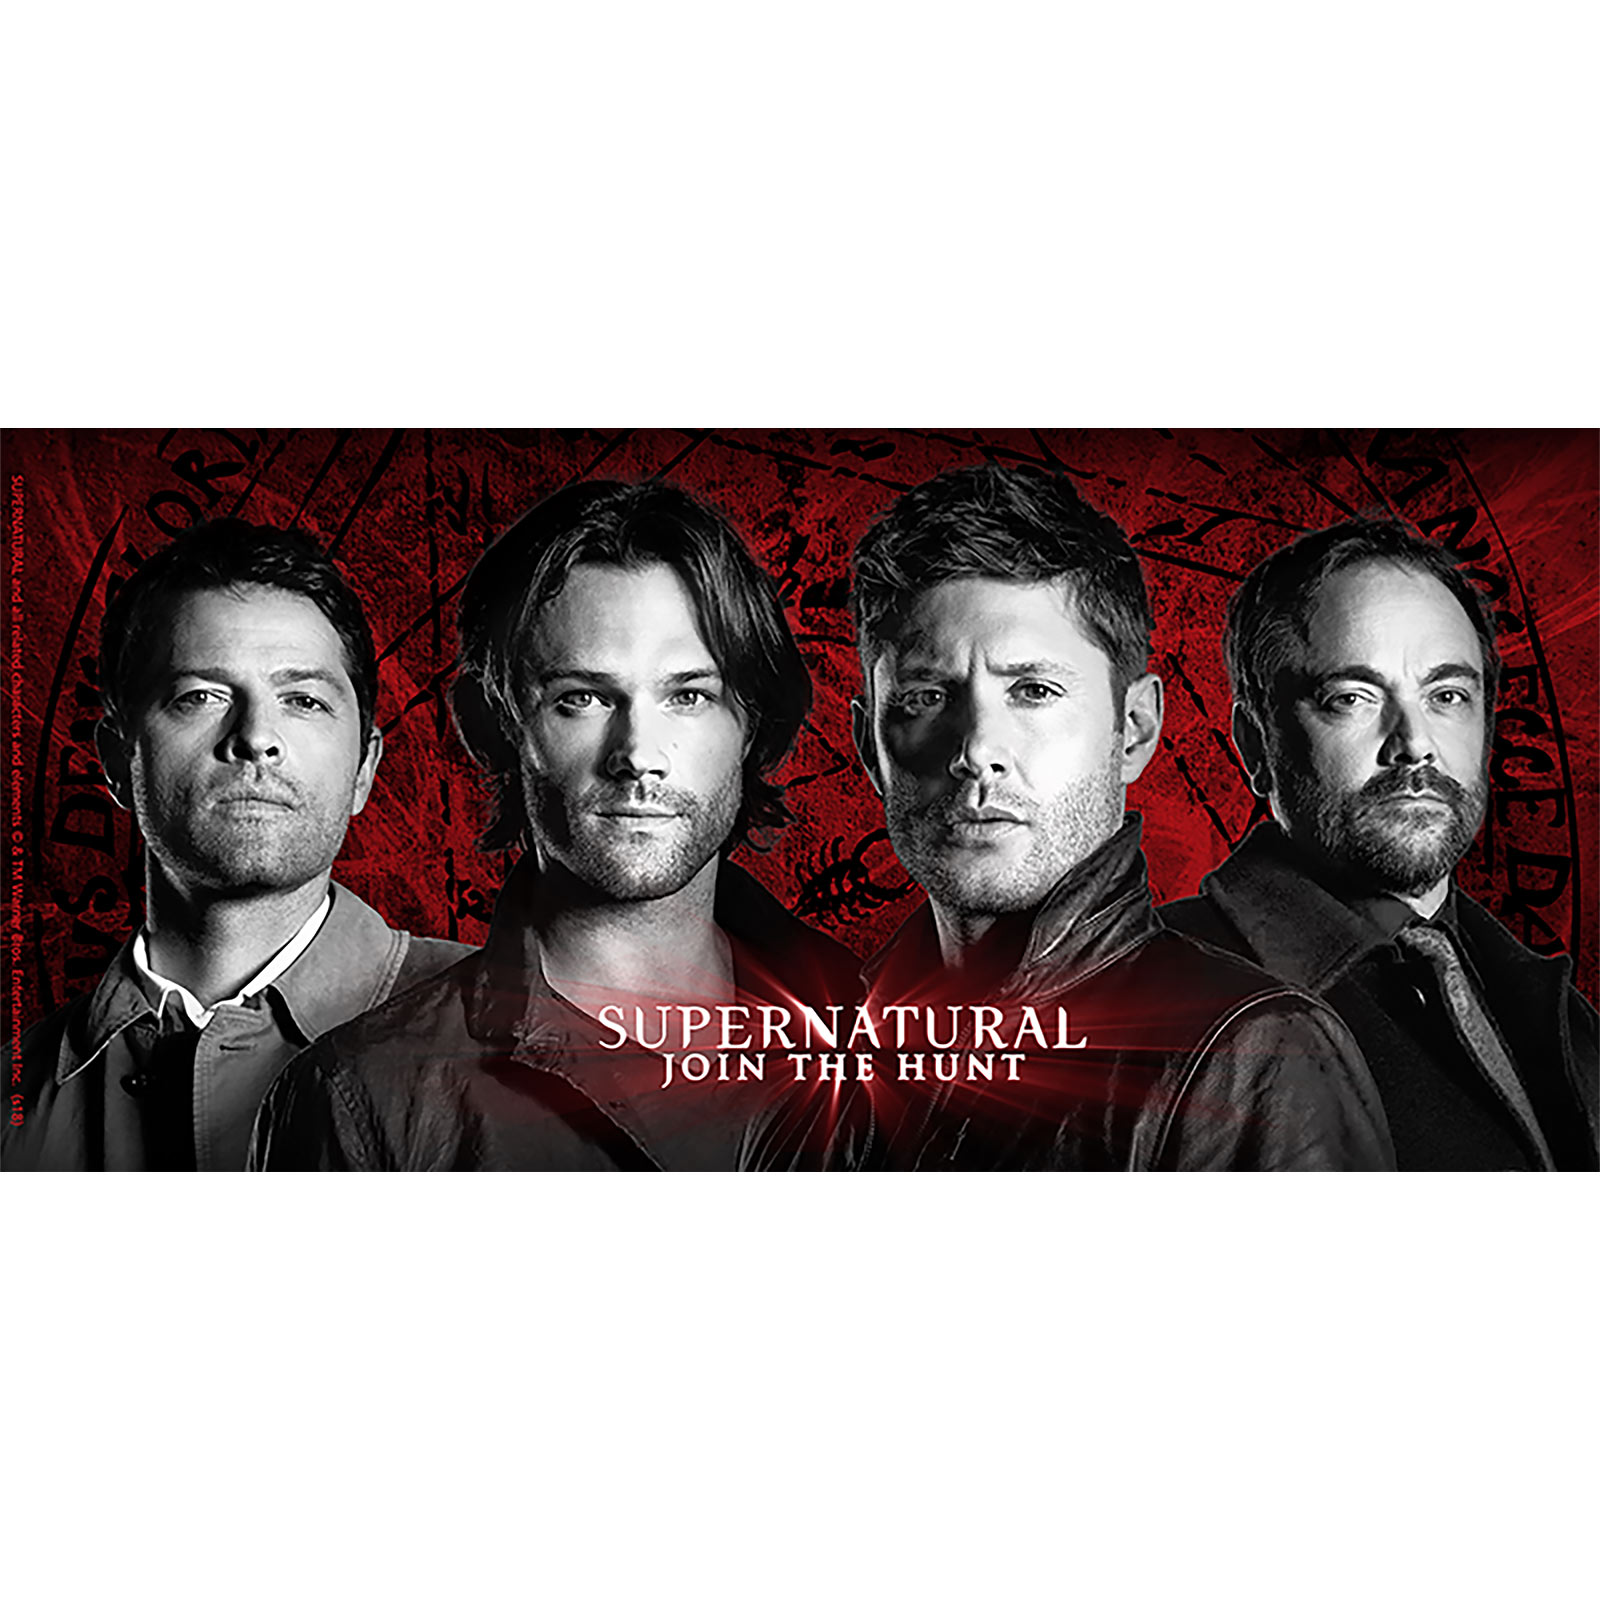 Supernatural - Characters Mug